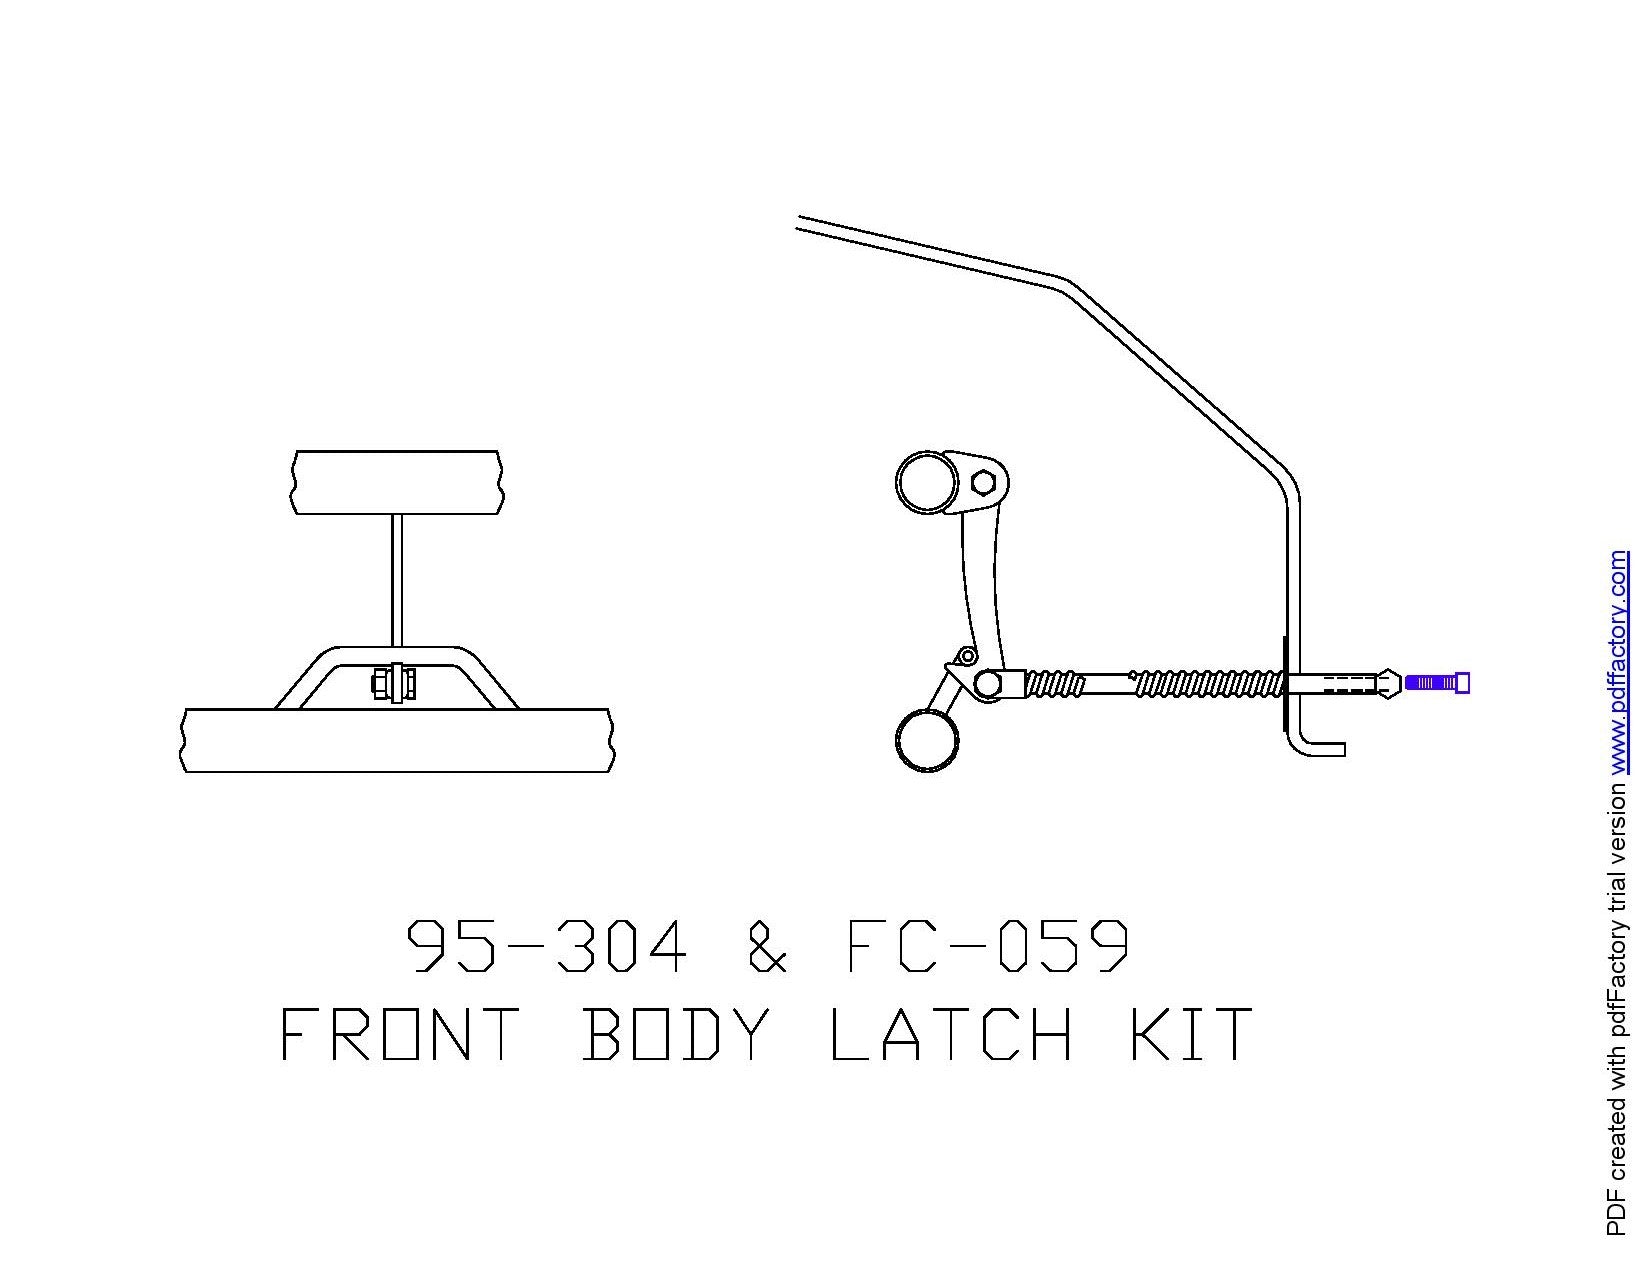 Body Latch Kit - S&W Funny Car